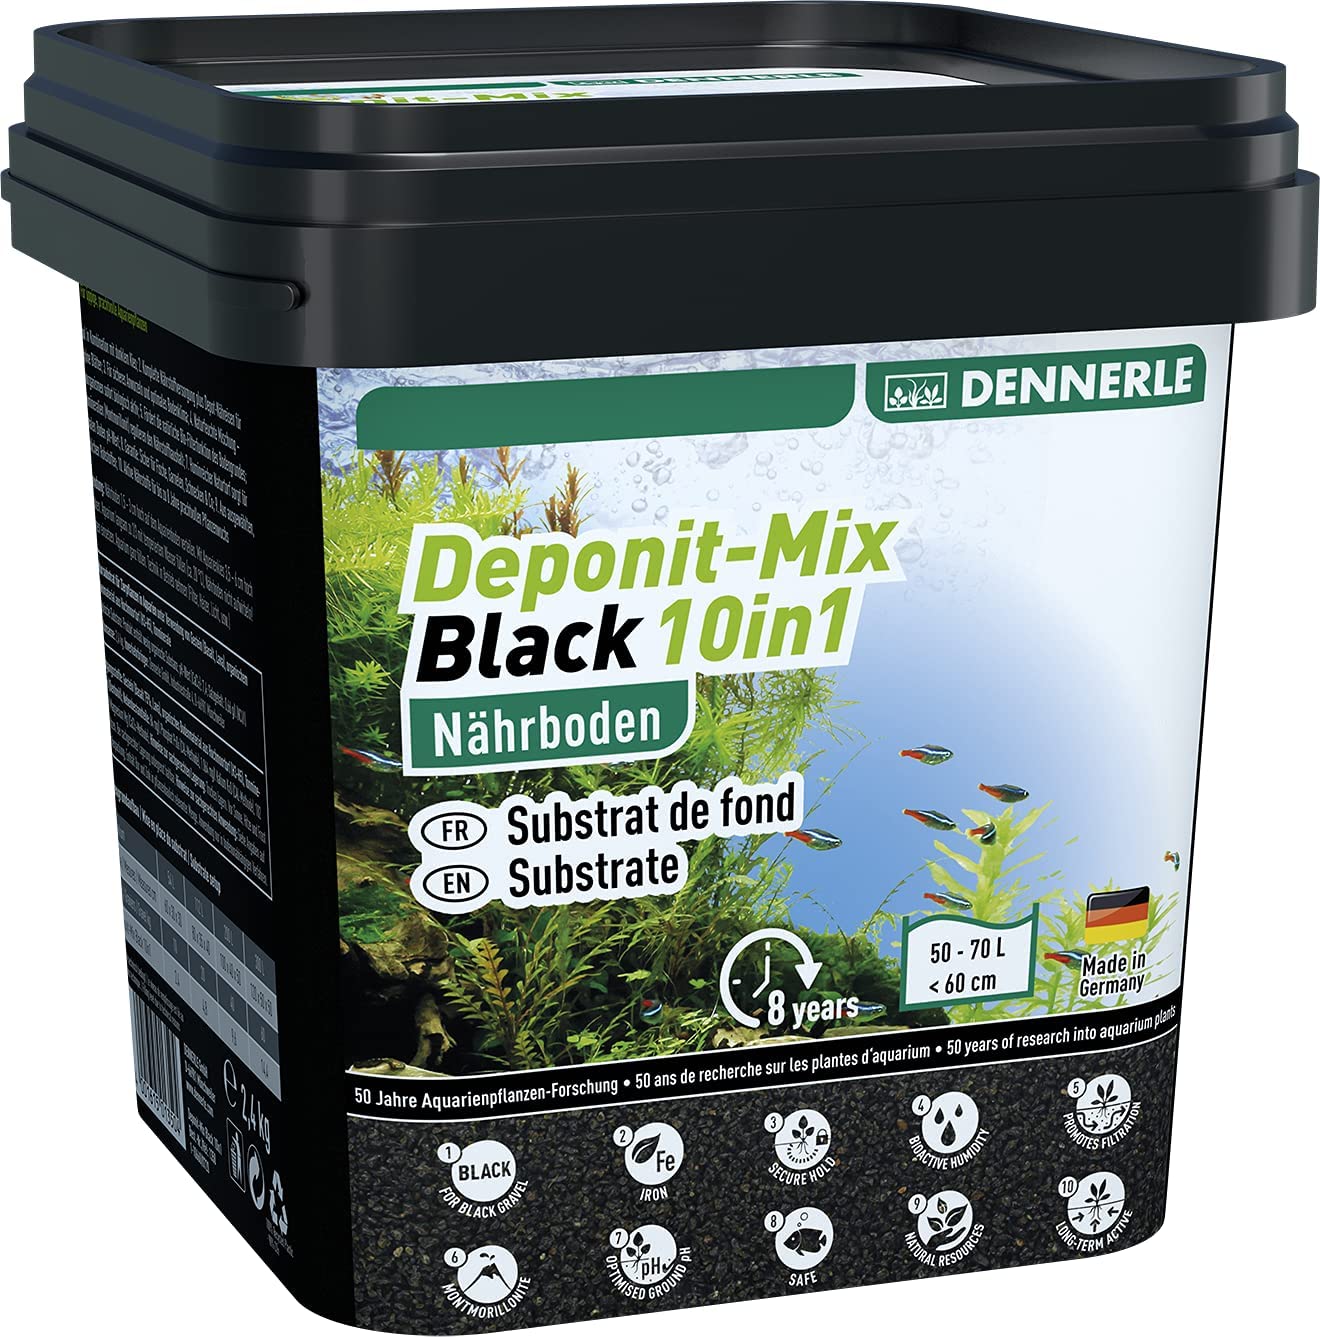 Dennerle Výživový substrát Deponit-Mix Black 10in1, 9,6kg